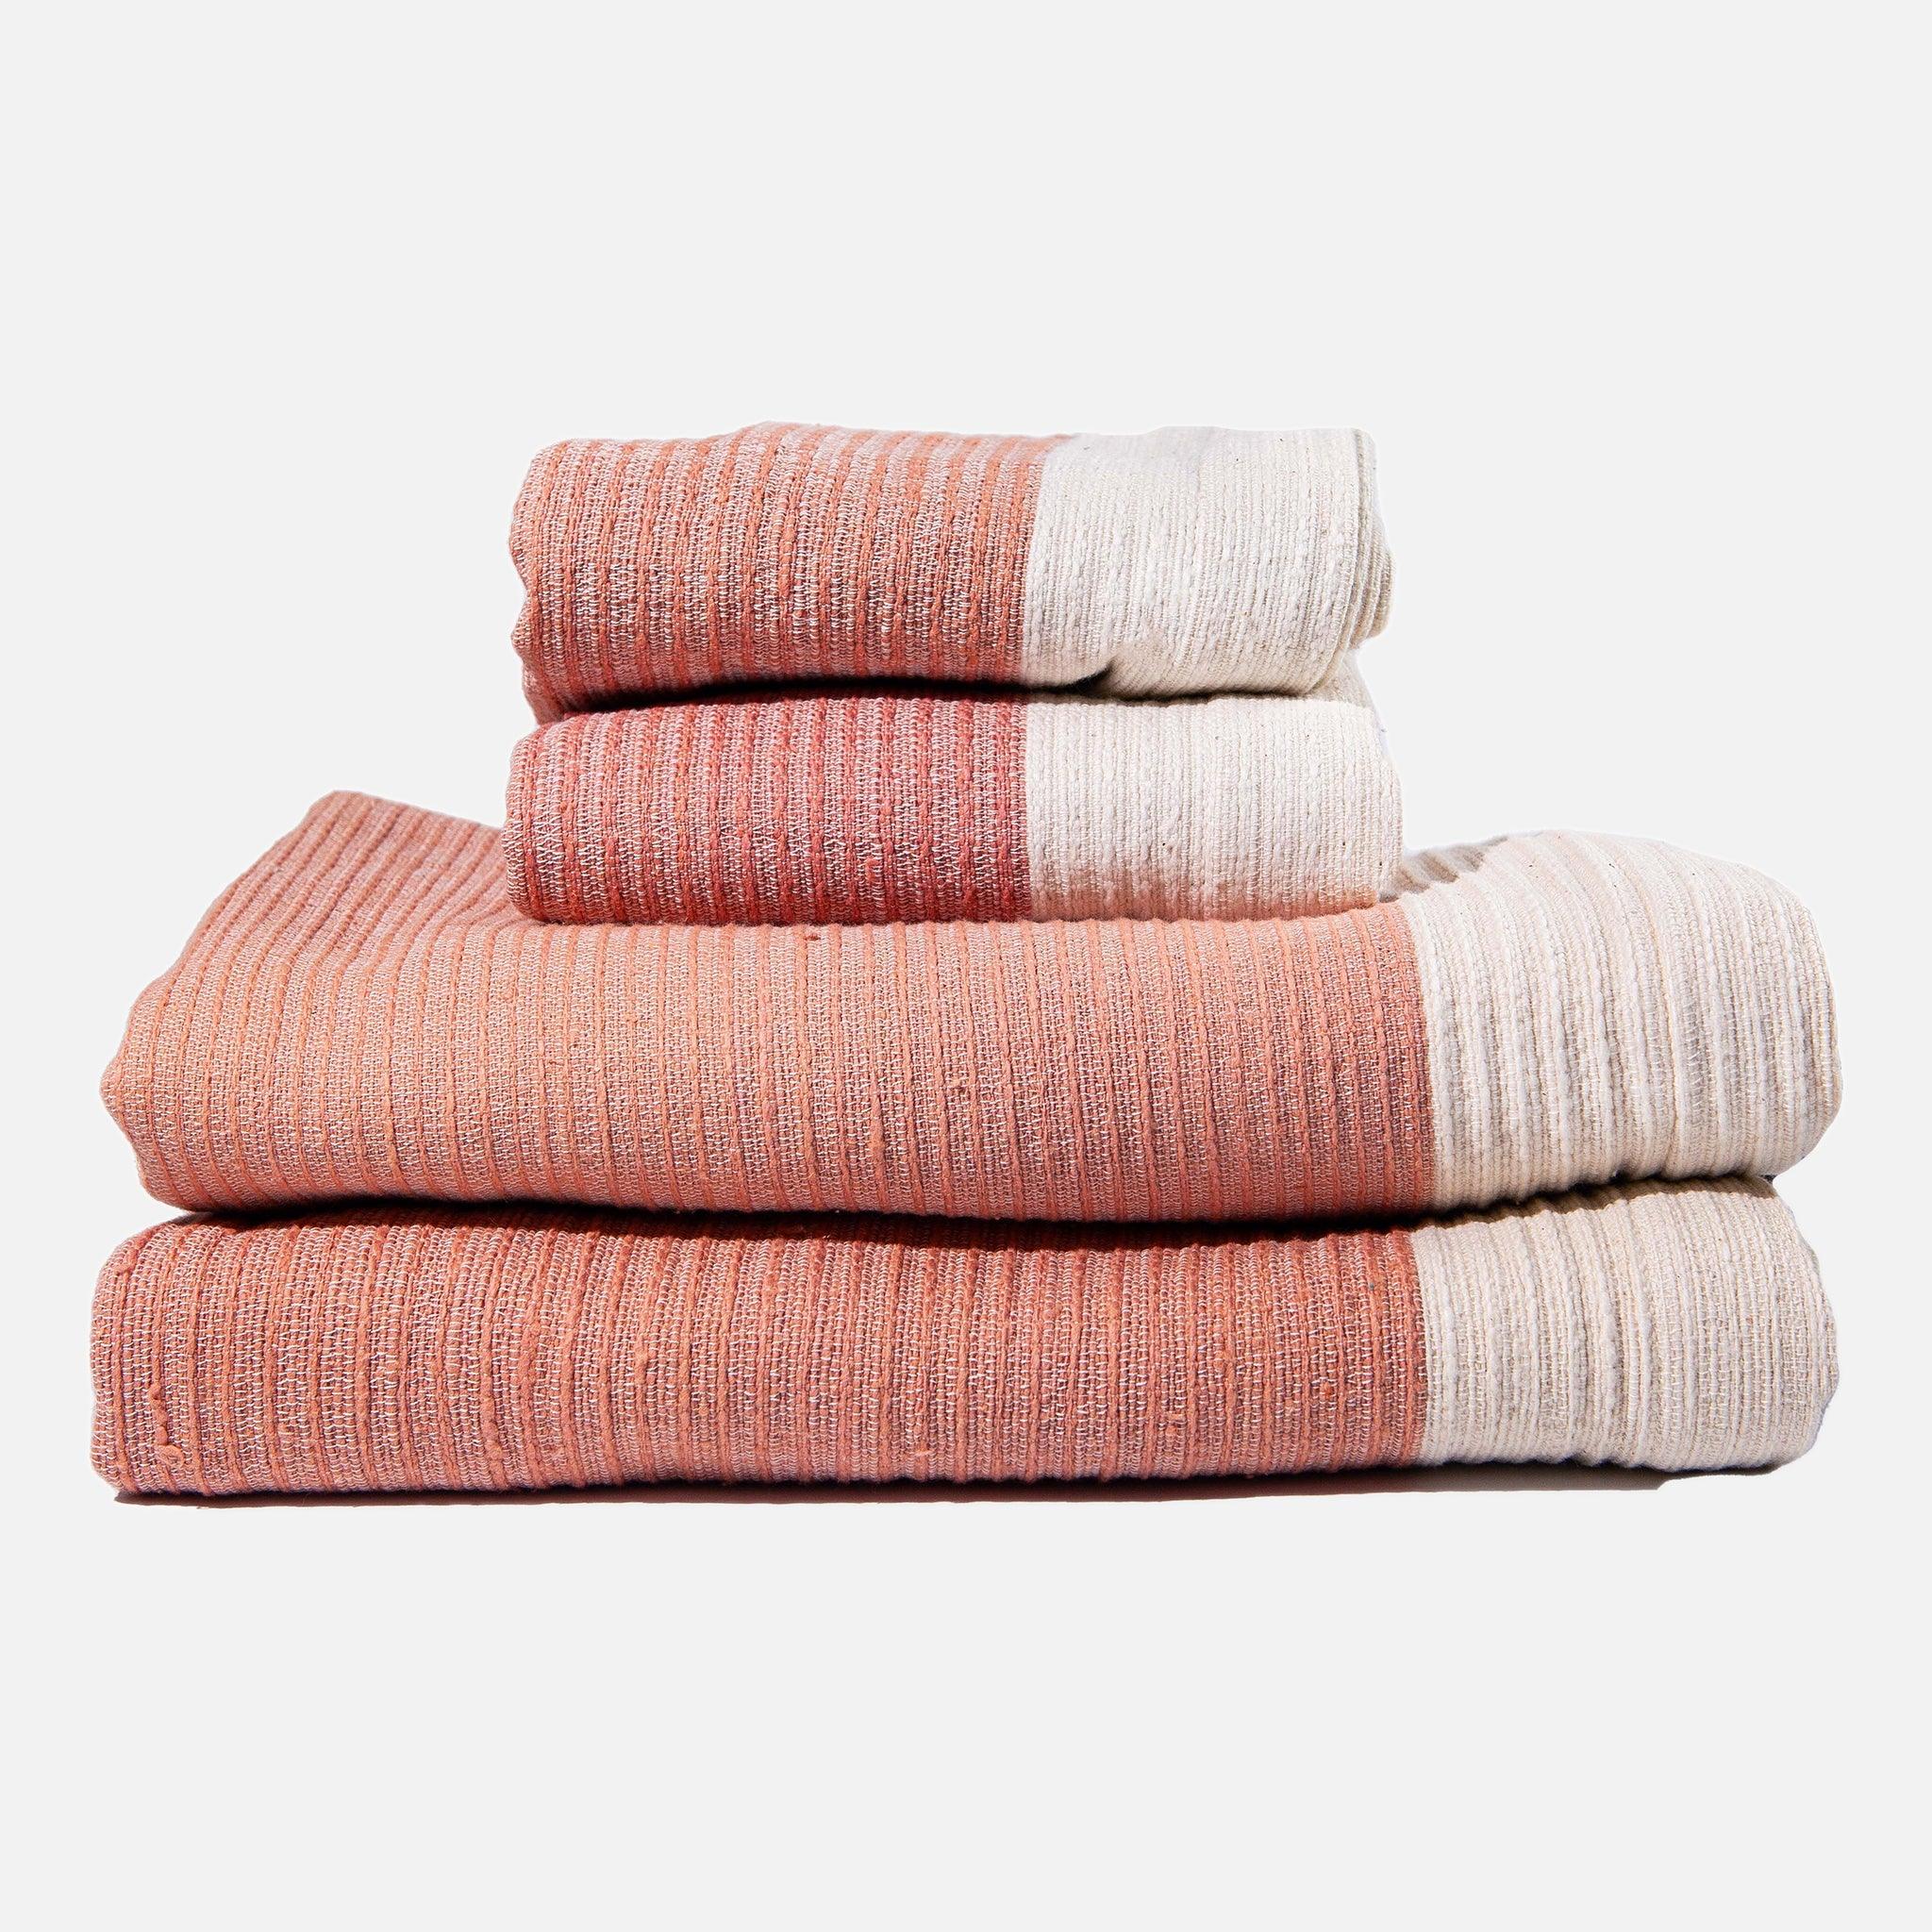 https://54kibo.com/cdn/shop/products/addis-pink-bath-towels-set-2-651444.jpg?v=1685589340